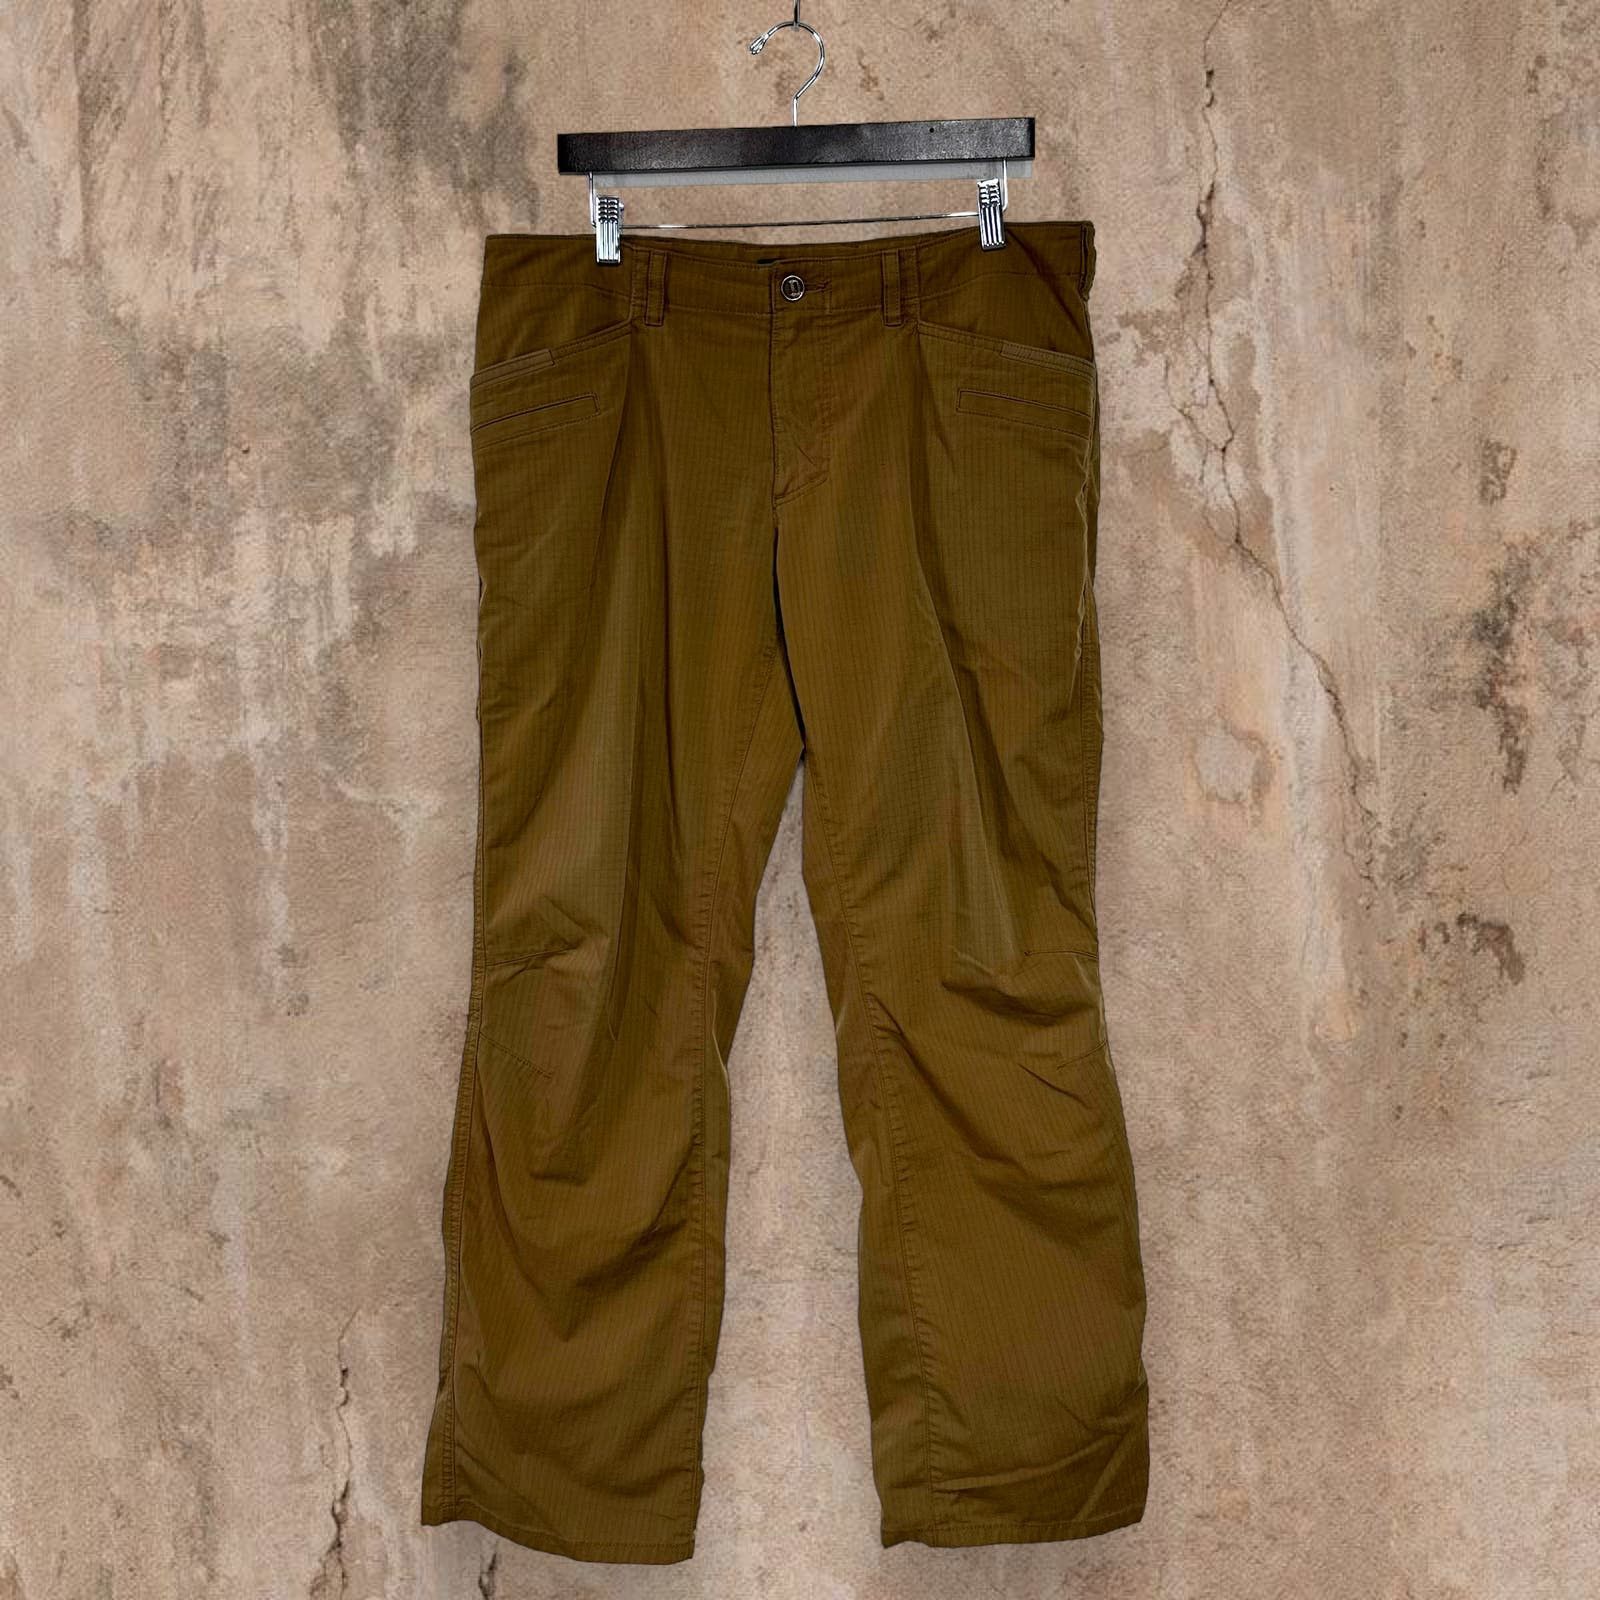 Vintage Vintage 5.11 Tactical Pants Tan Baggy Fit Cargos 90s Size US 36 / EU 52 - 3 Thumbnail